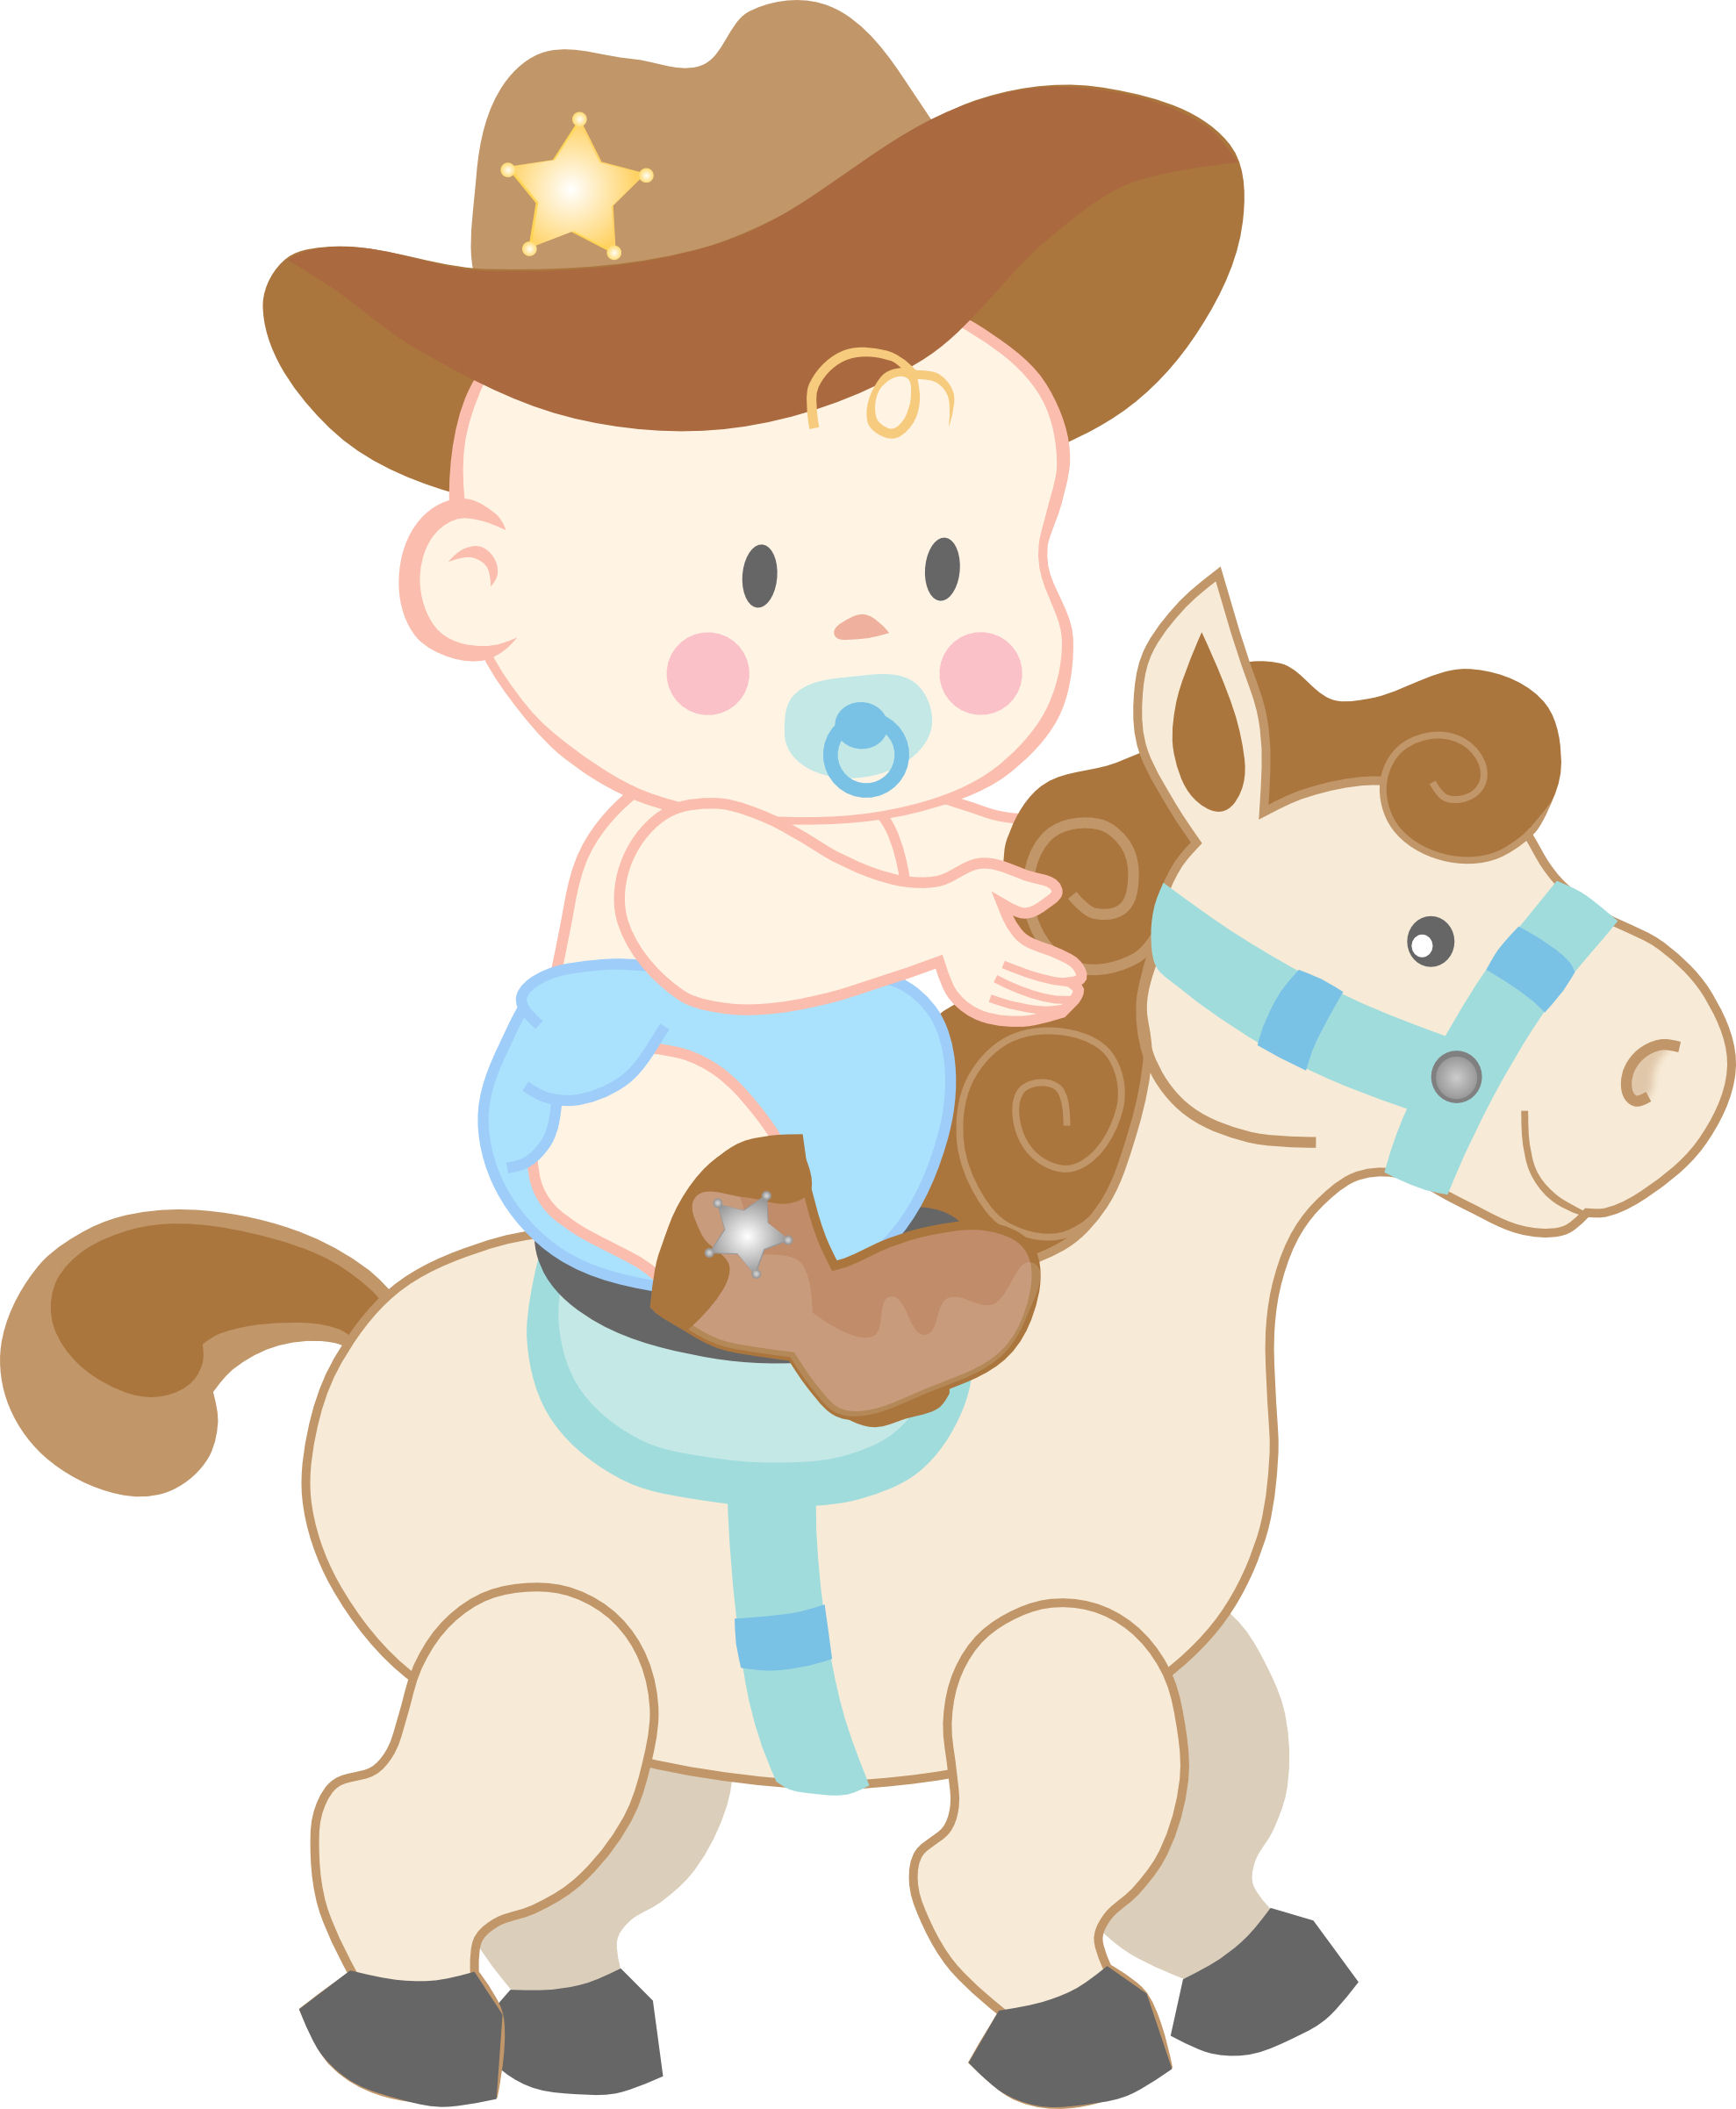 10 Cowboy Baby Boy Free Clipa